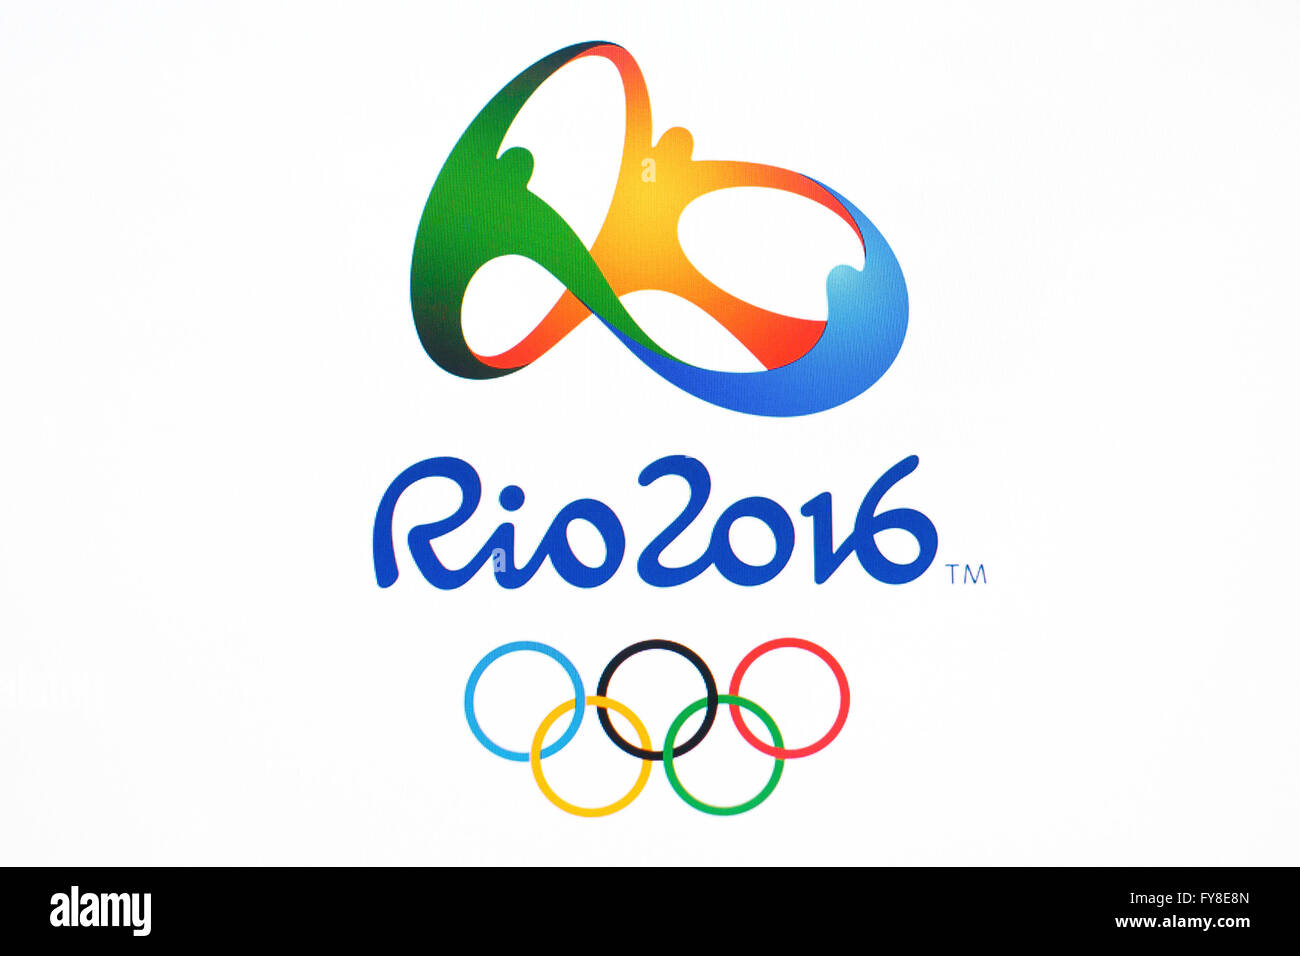 GDANSK, POLOGNE - Le 20 novembre 2015. Sur l'écran de l'ordinateur- logo officiel des Jeux Olympiques d'été de 2016 les Jeux de Rio au Brésil, Editorial Banque D'Images